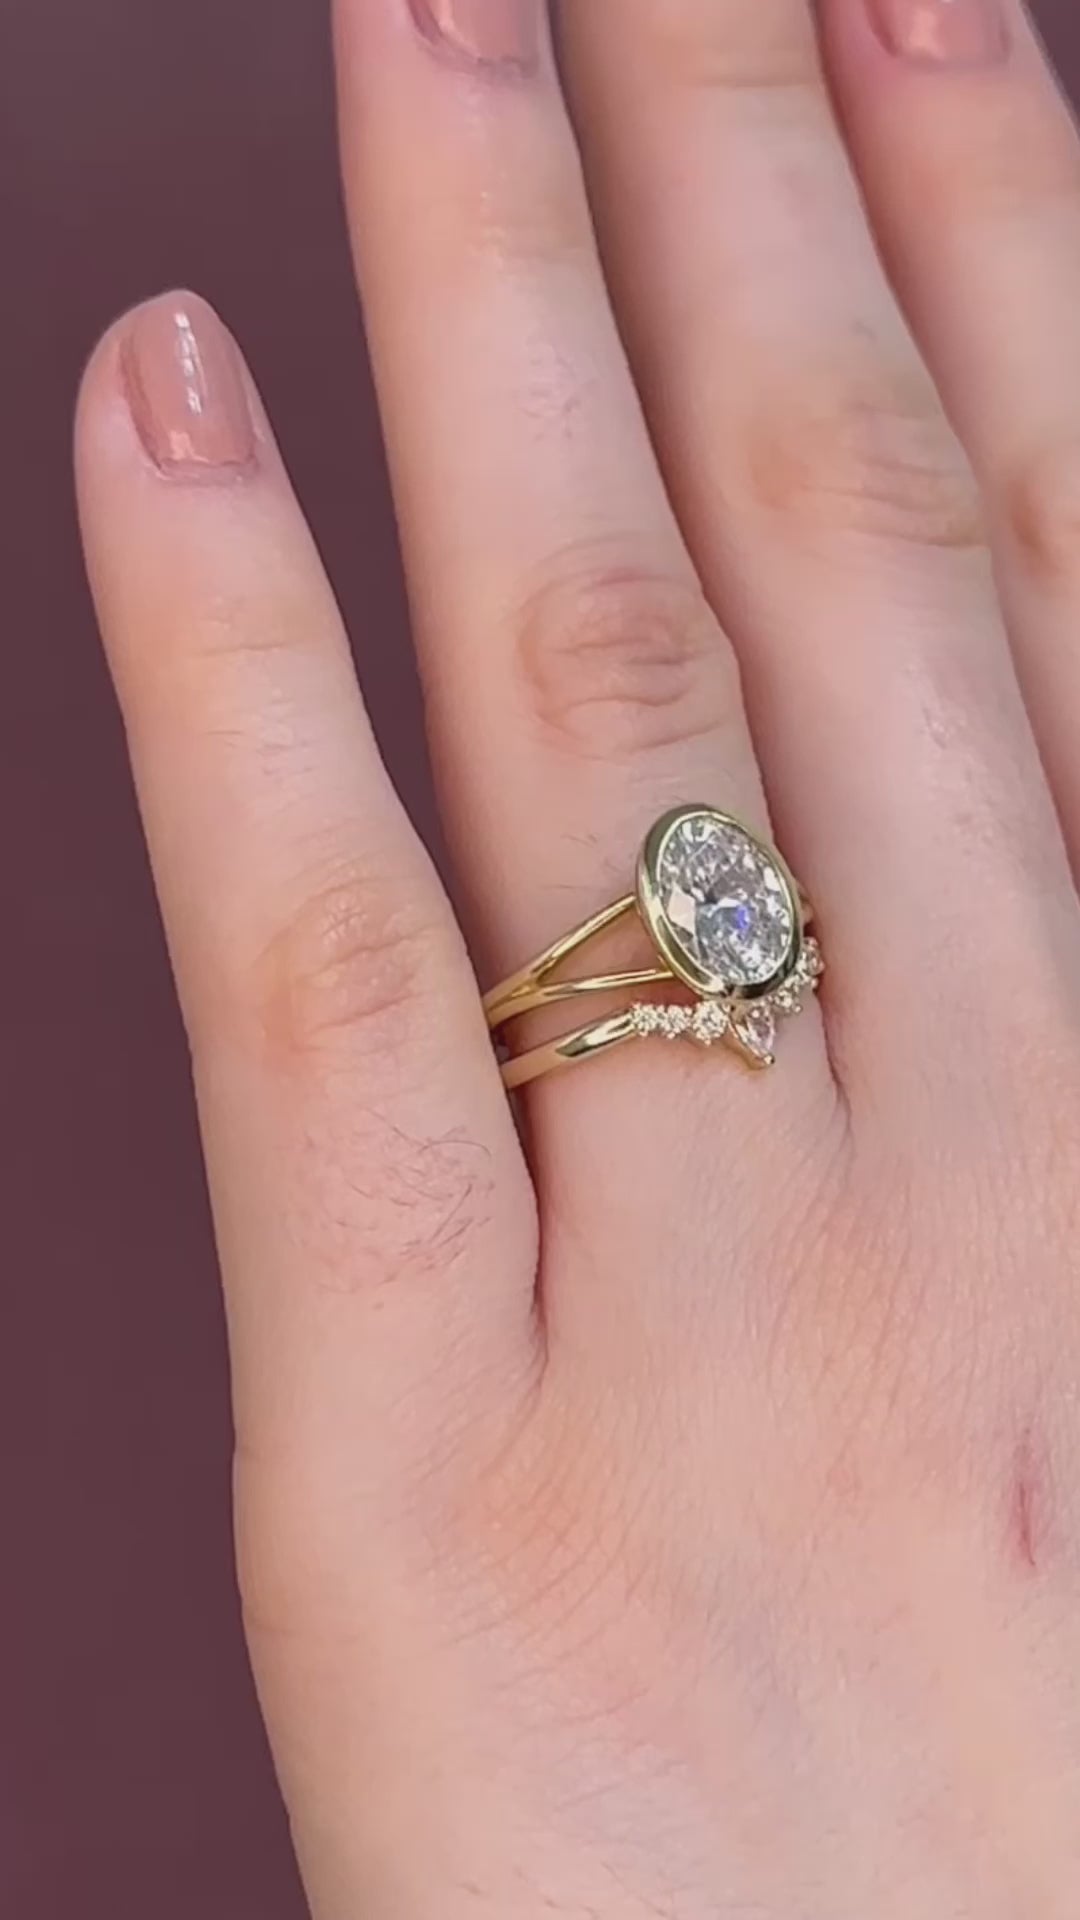 Jamie Park Jewelry - Diamond Crown Ring